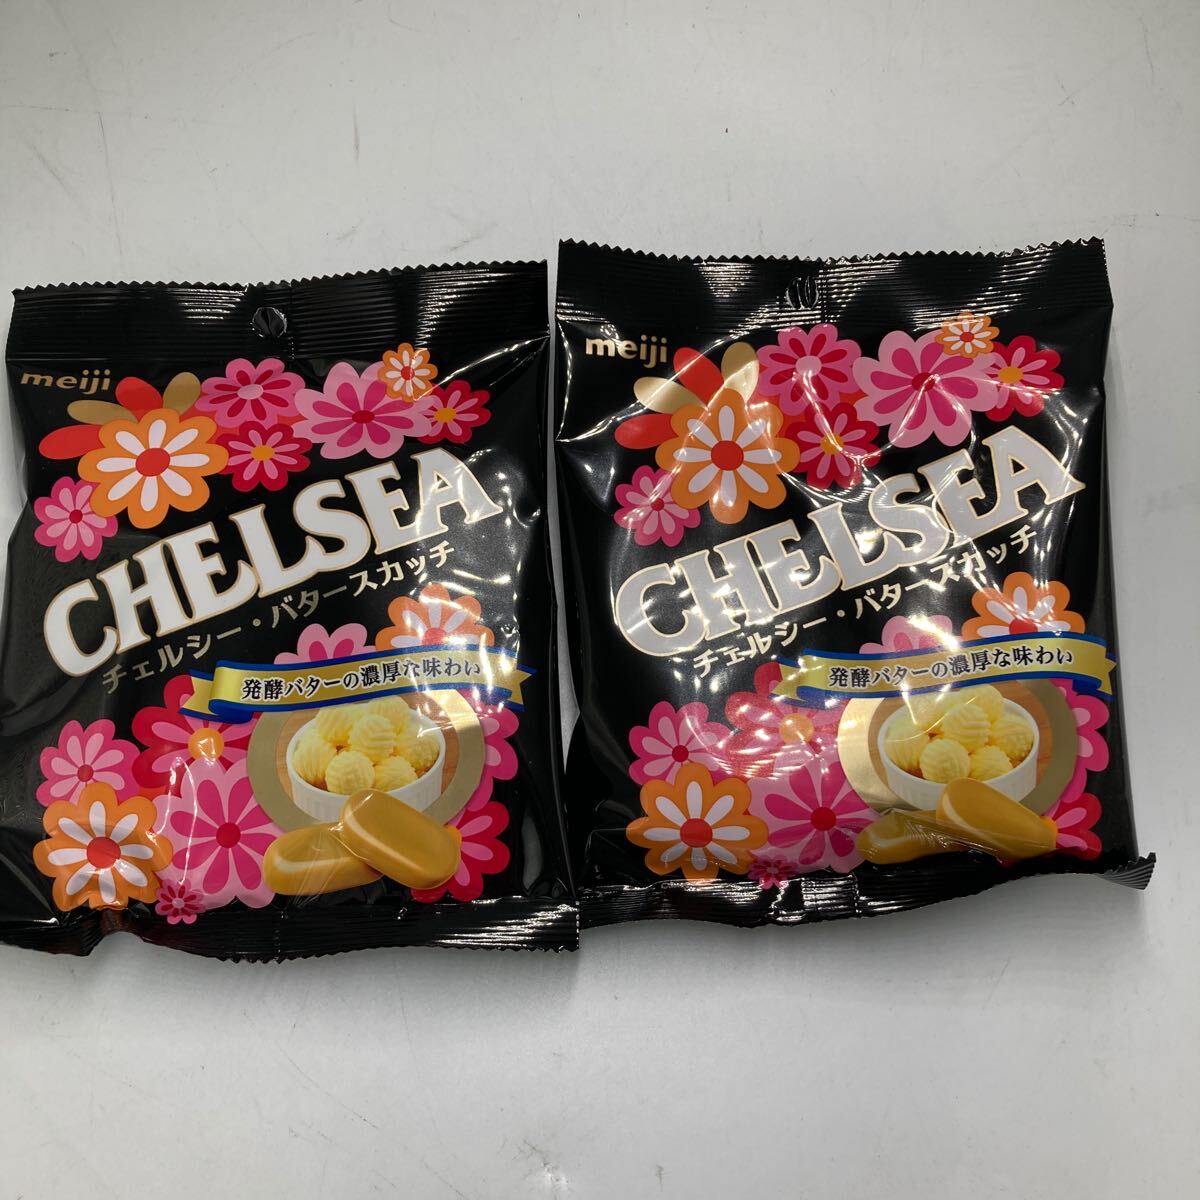 CHELSEA Chelsea butter ska chi